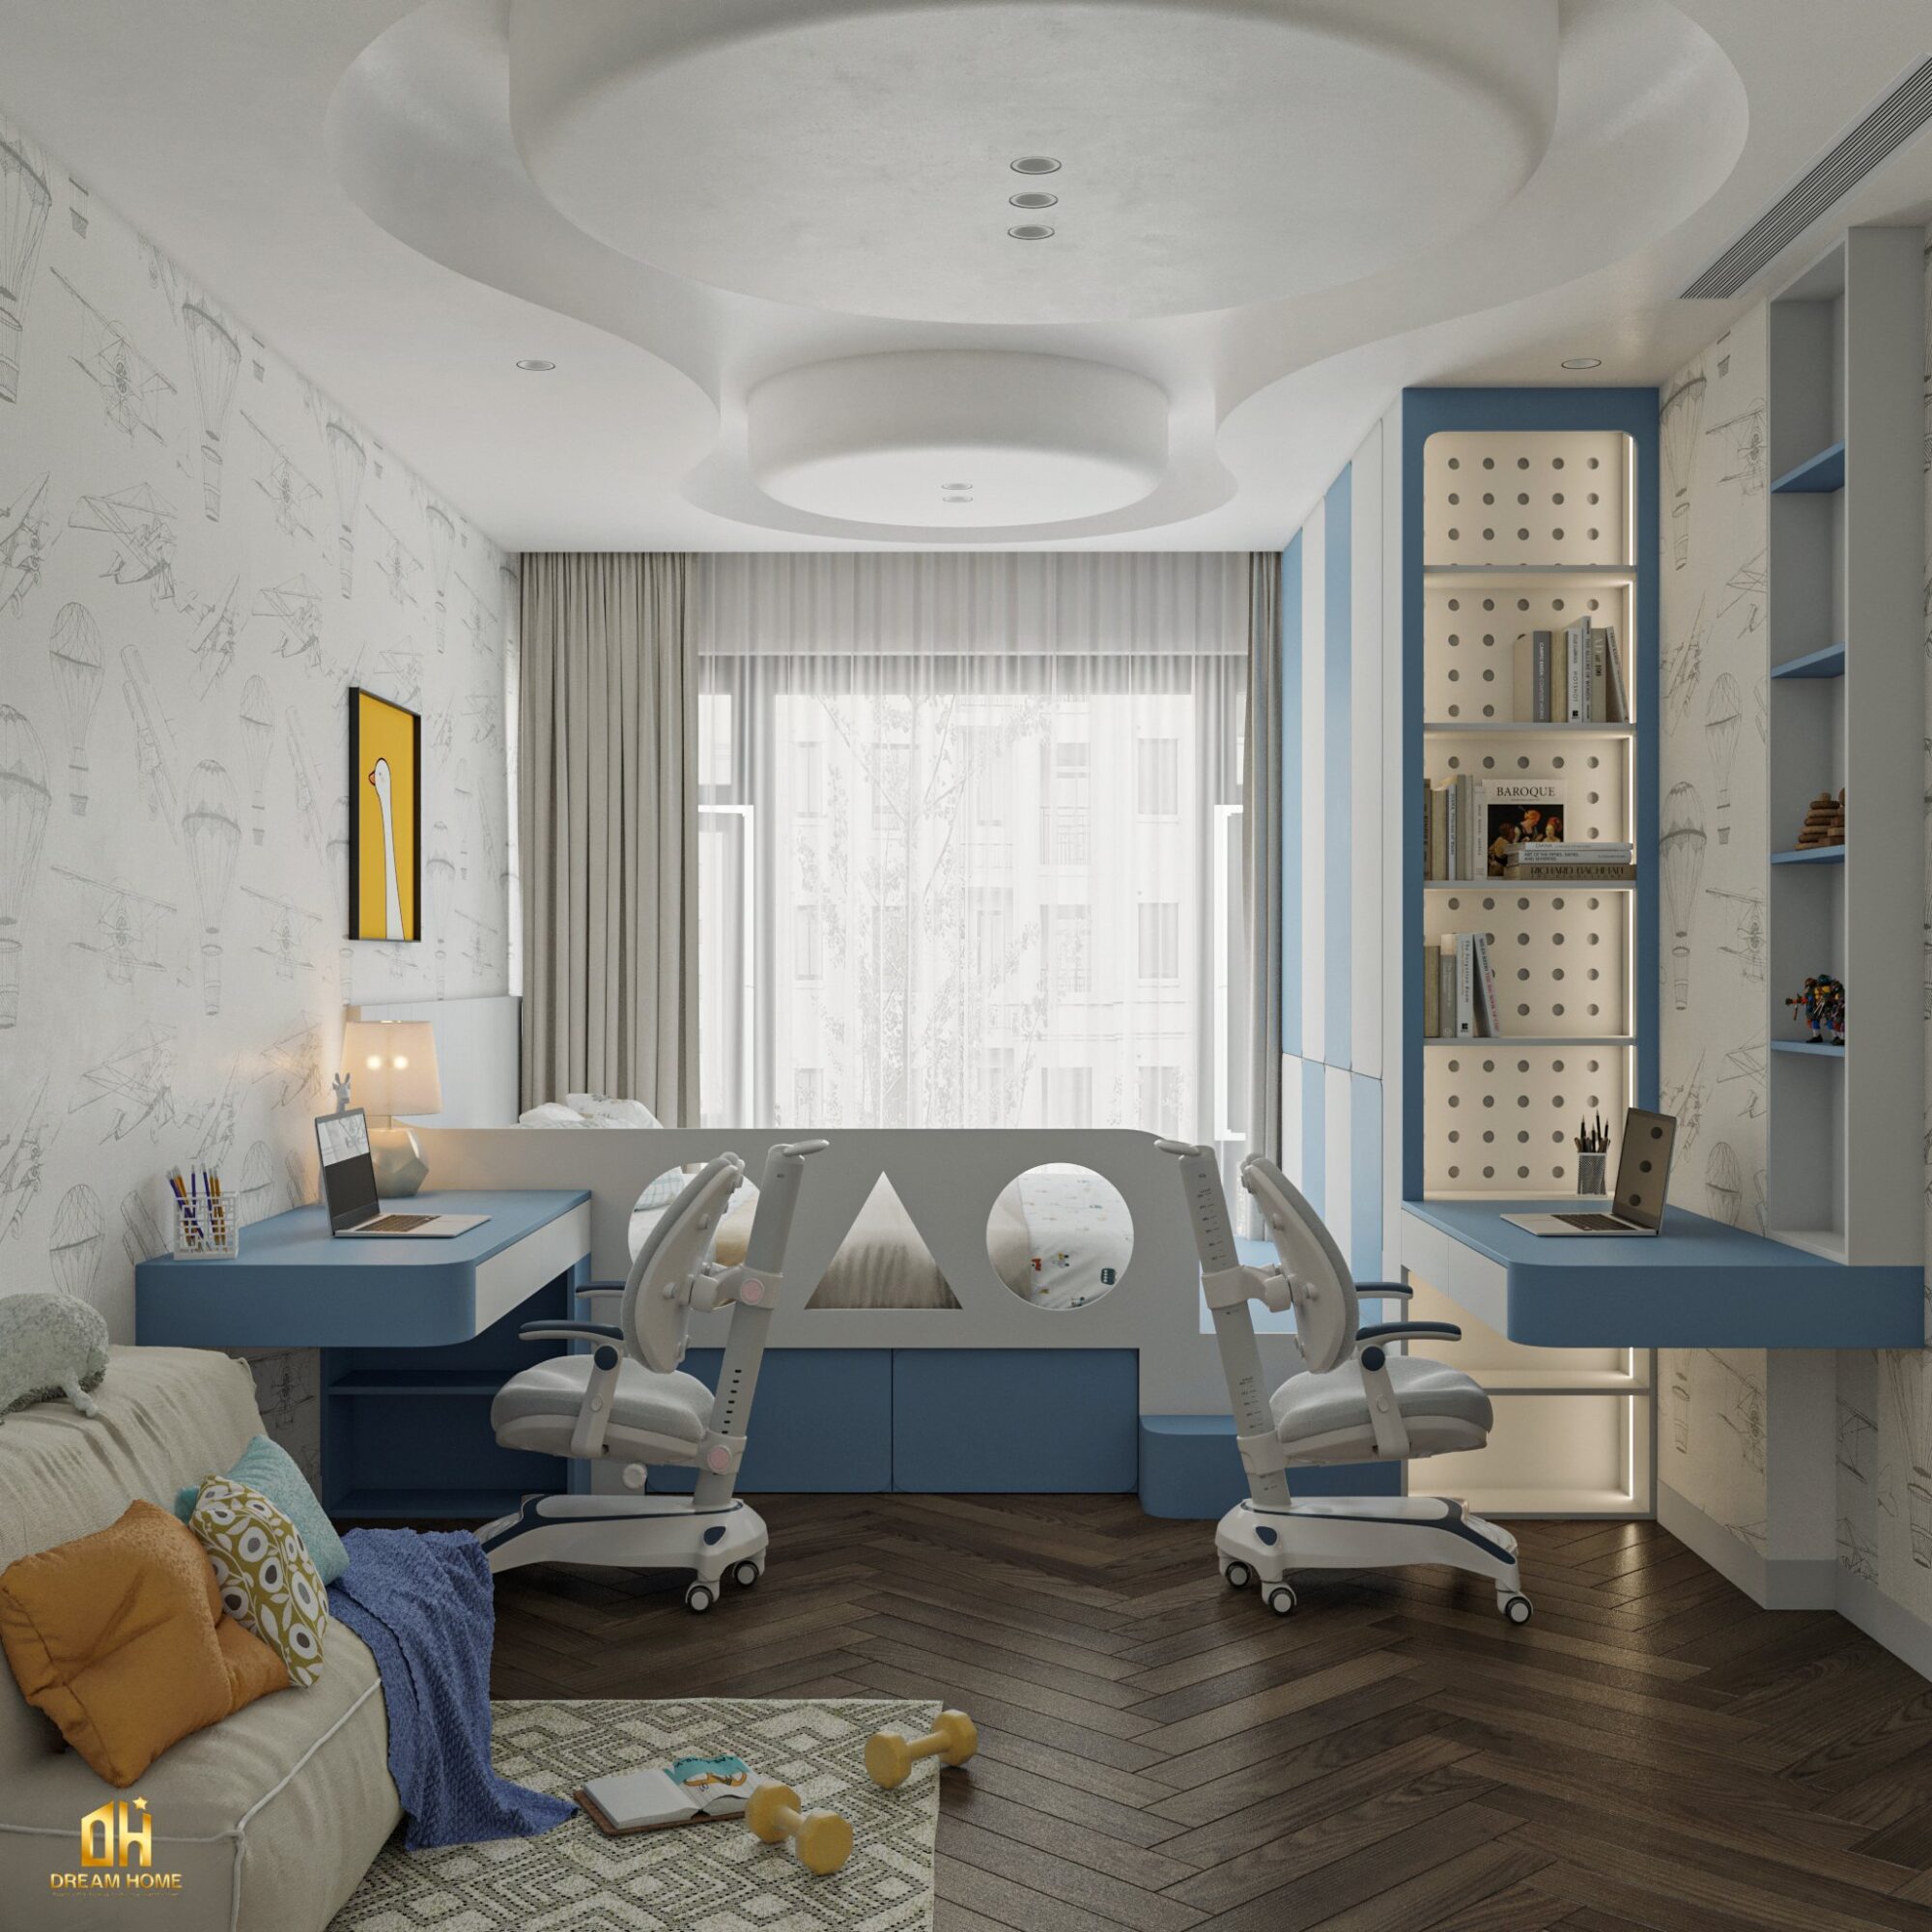 Thiết kế nội thất cho bé tạo ra không gian bình yên, tăng cường sự sảng khoái và sự phát triển của trẻ